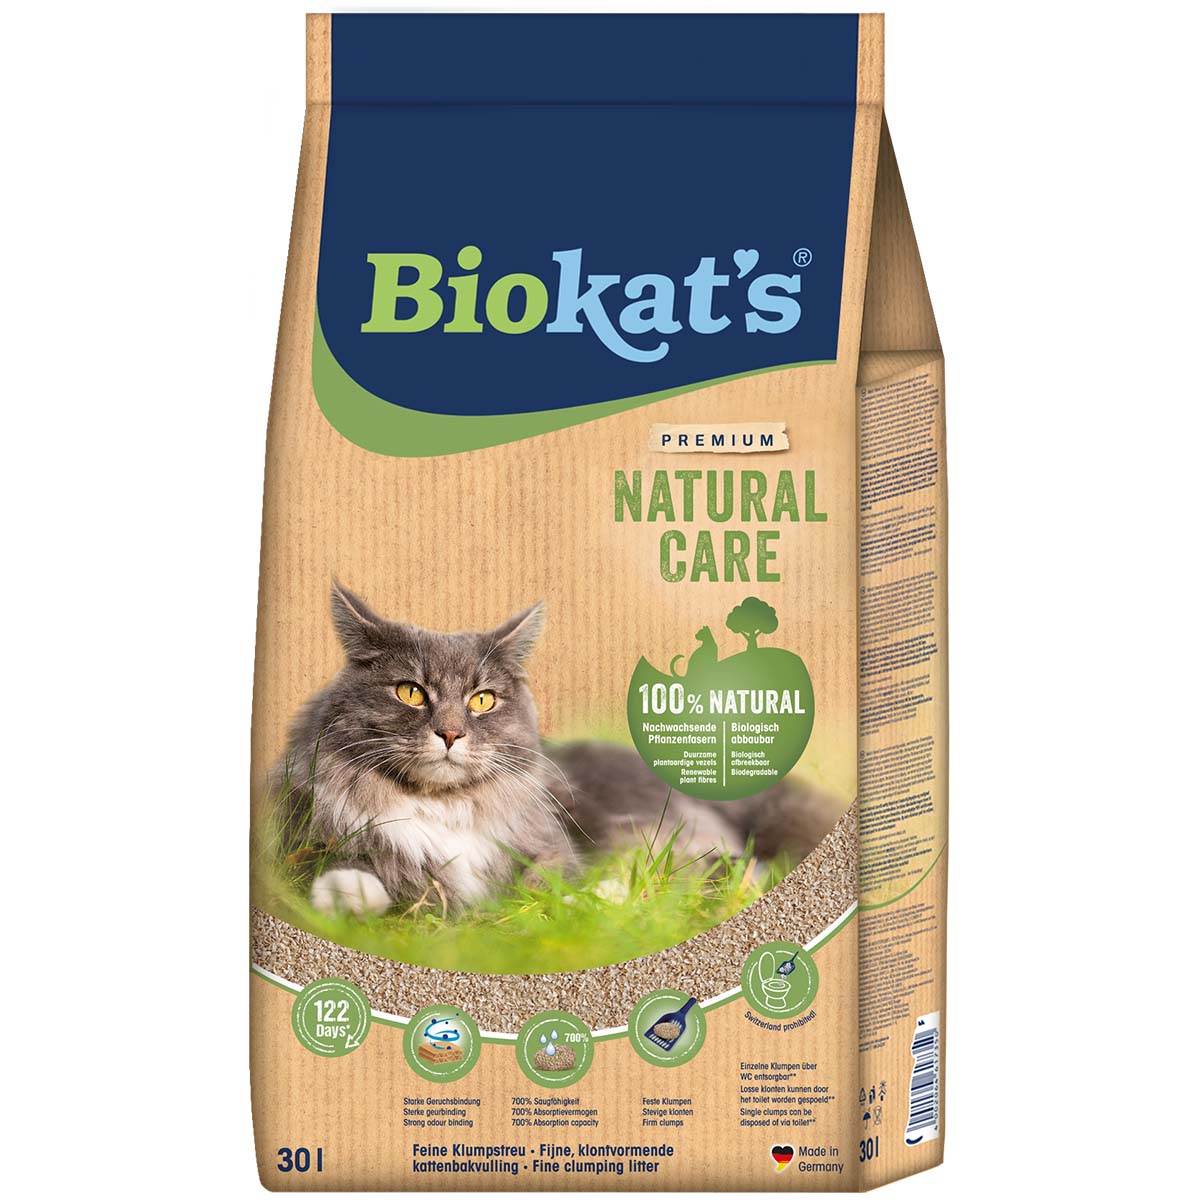 Biokat' Natural Care 30 L von BioKat's